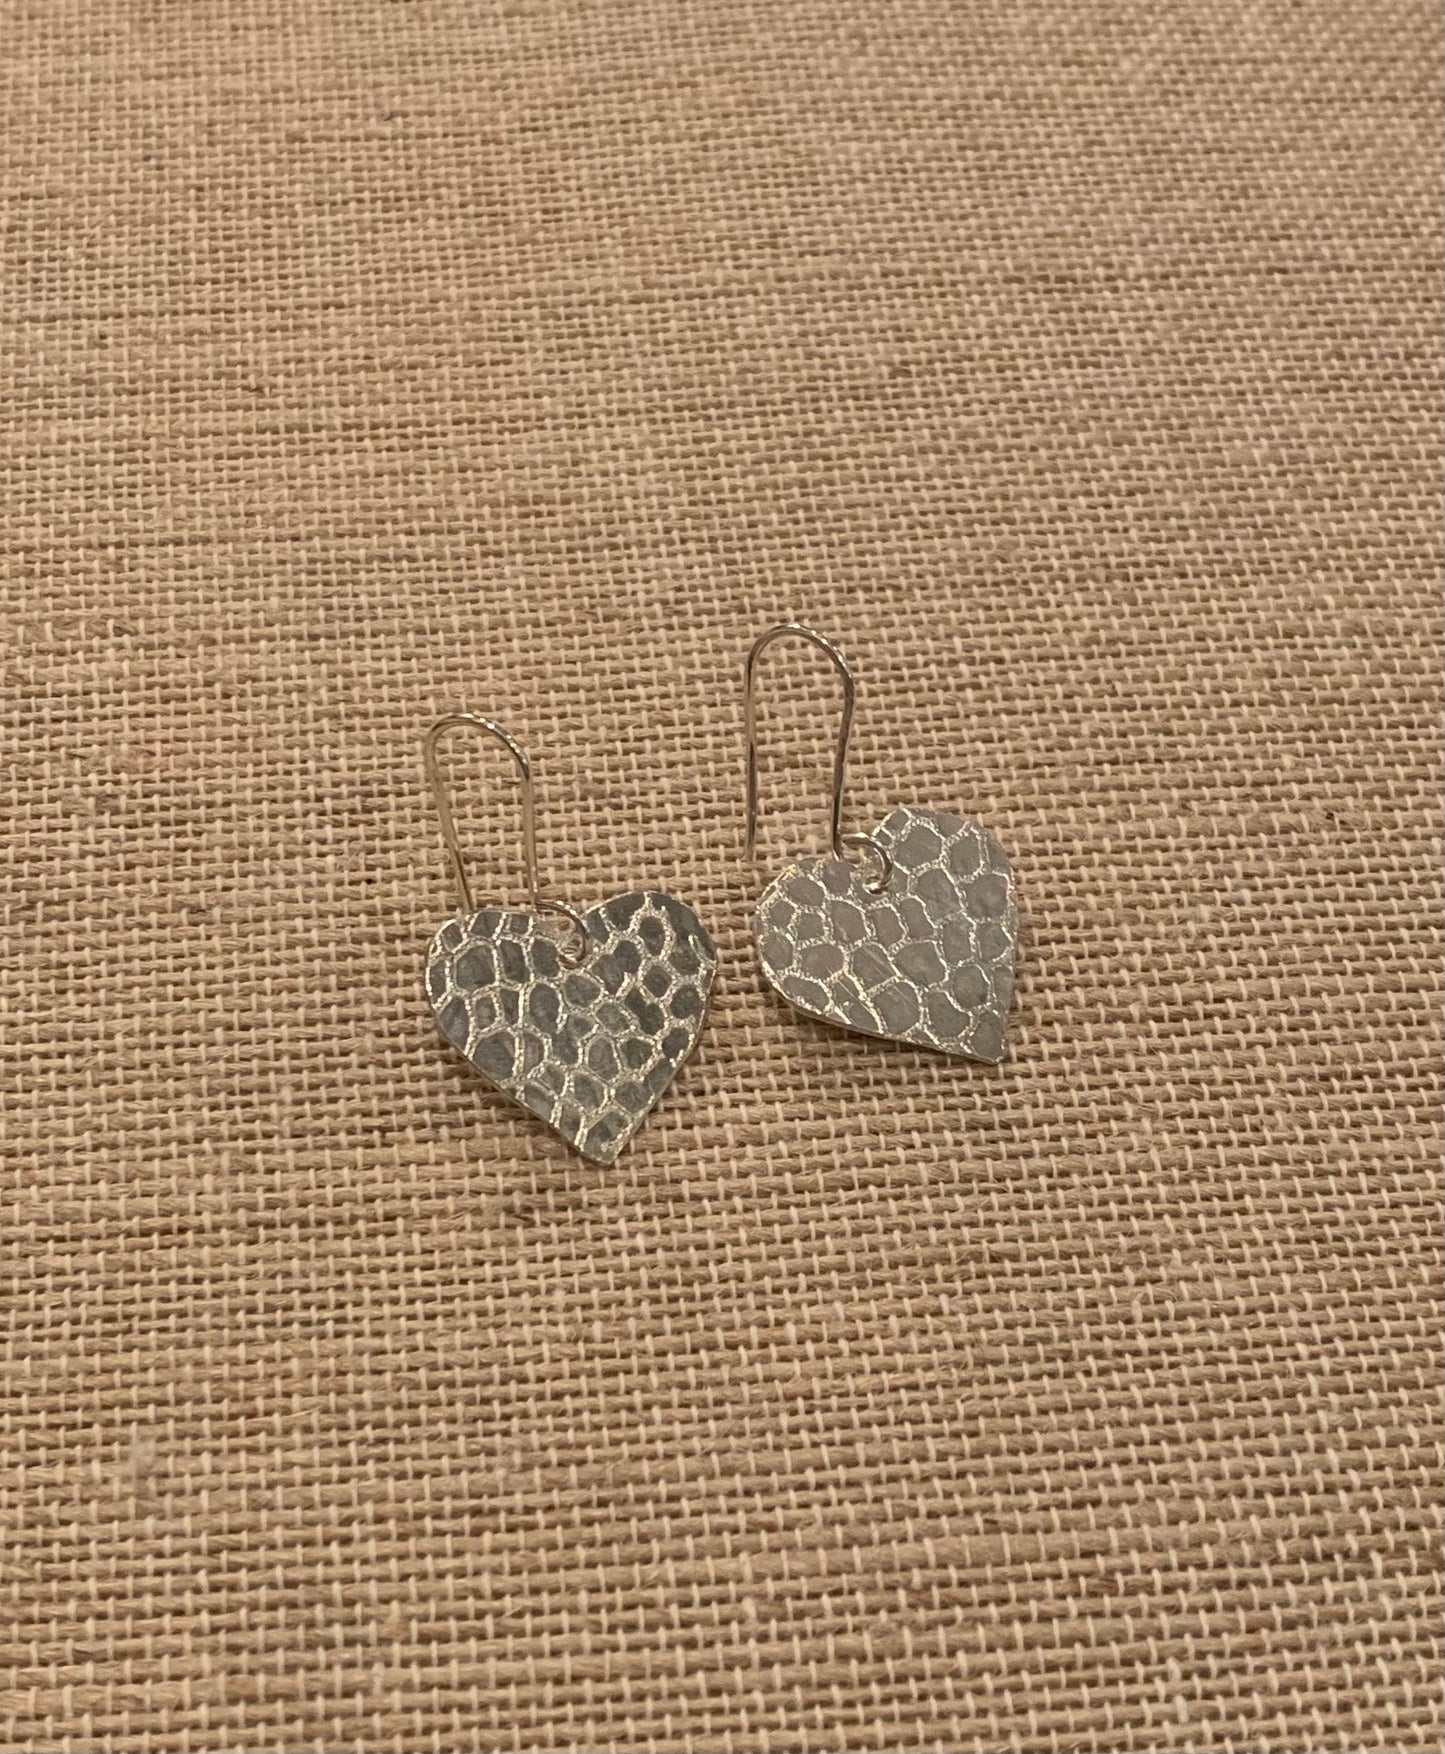 Sterling Heart Earrings